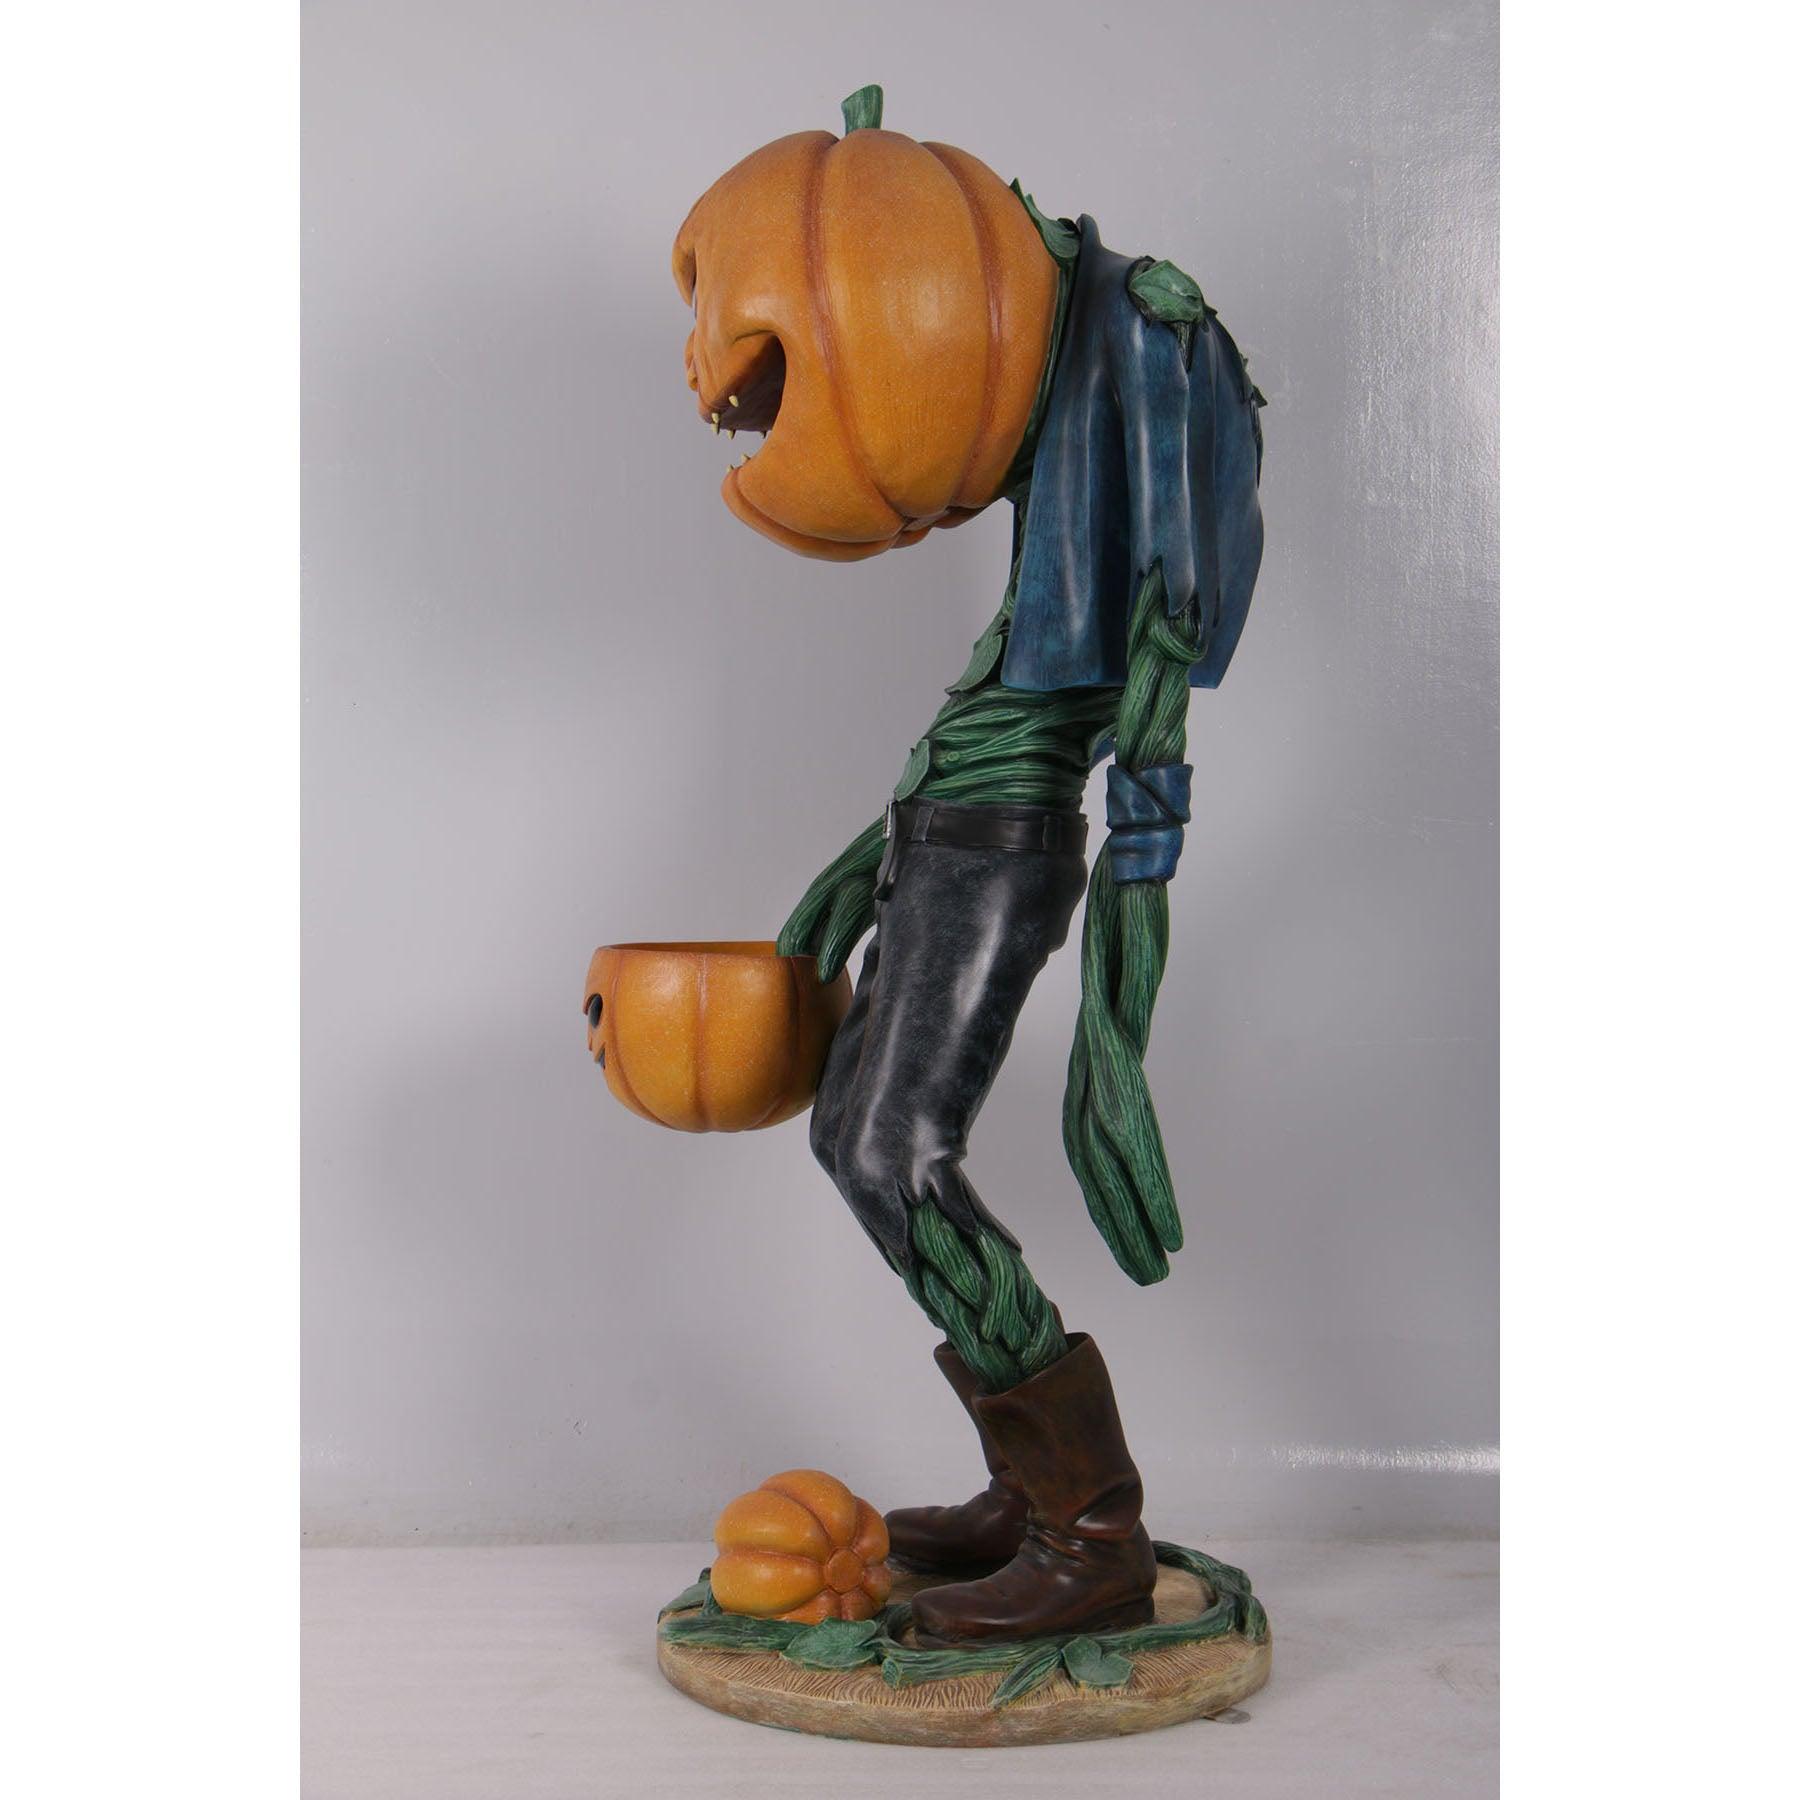 Scary Pumpkin Man Life Size Statue - LM Treasures Prop Rentals 